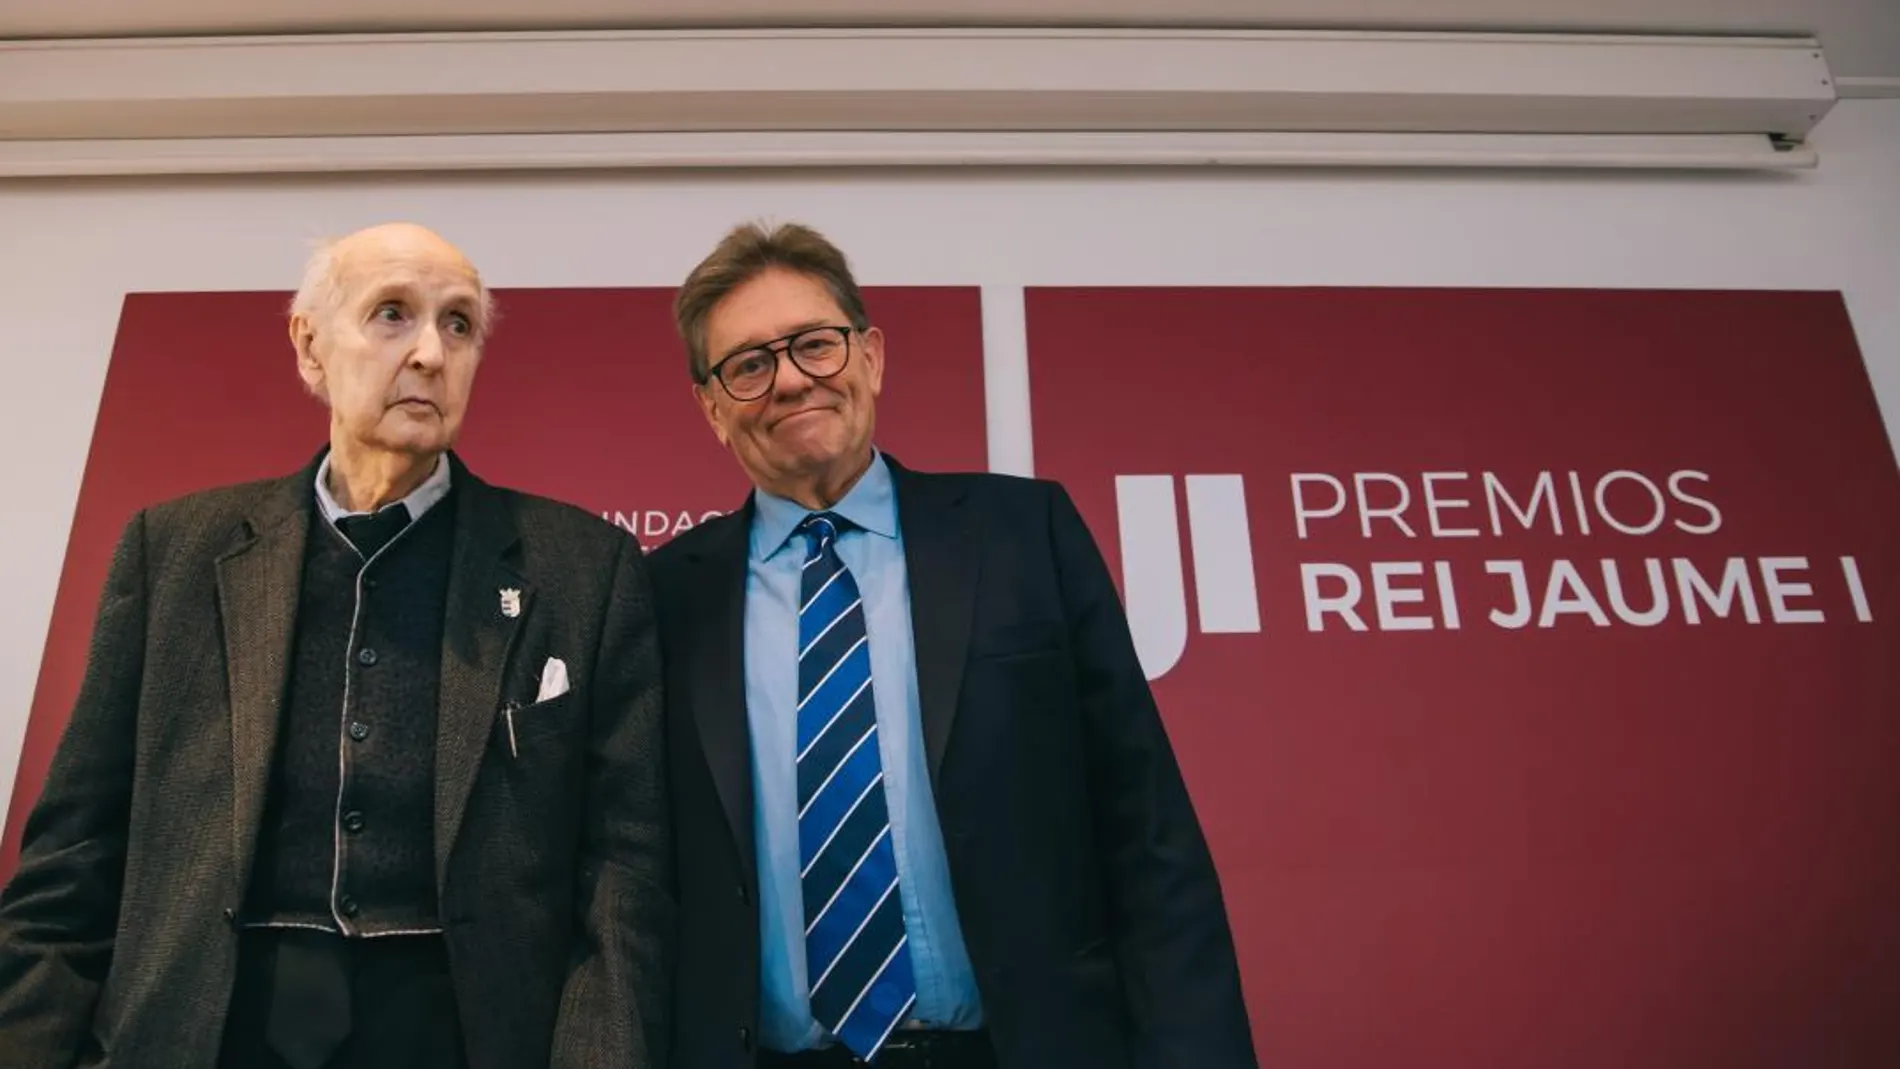 Kike Taberner. El presidente ejecutivo de la Fundación Premios Rey Jaume I, Javier Quesada (dcha), junto al presidente fundador, Santiago Grisolía